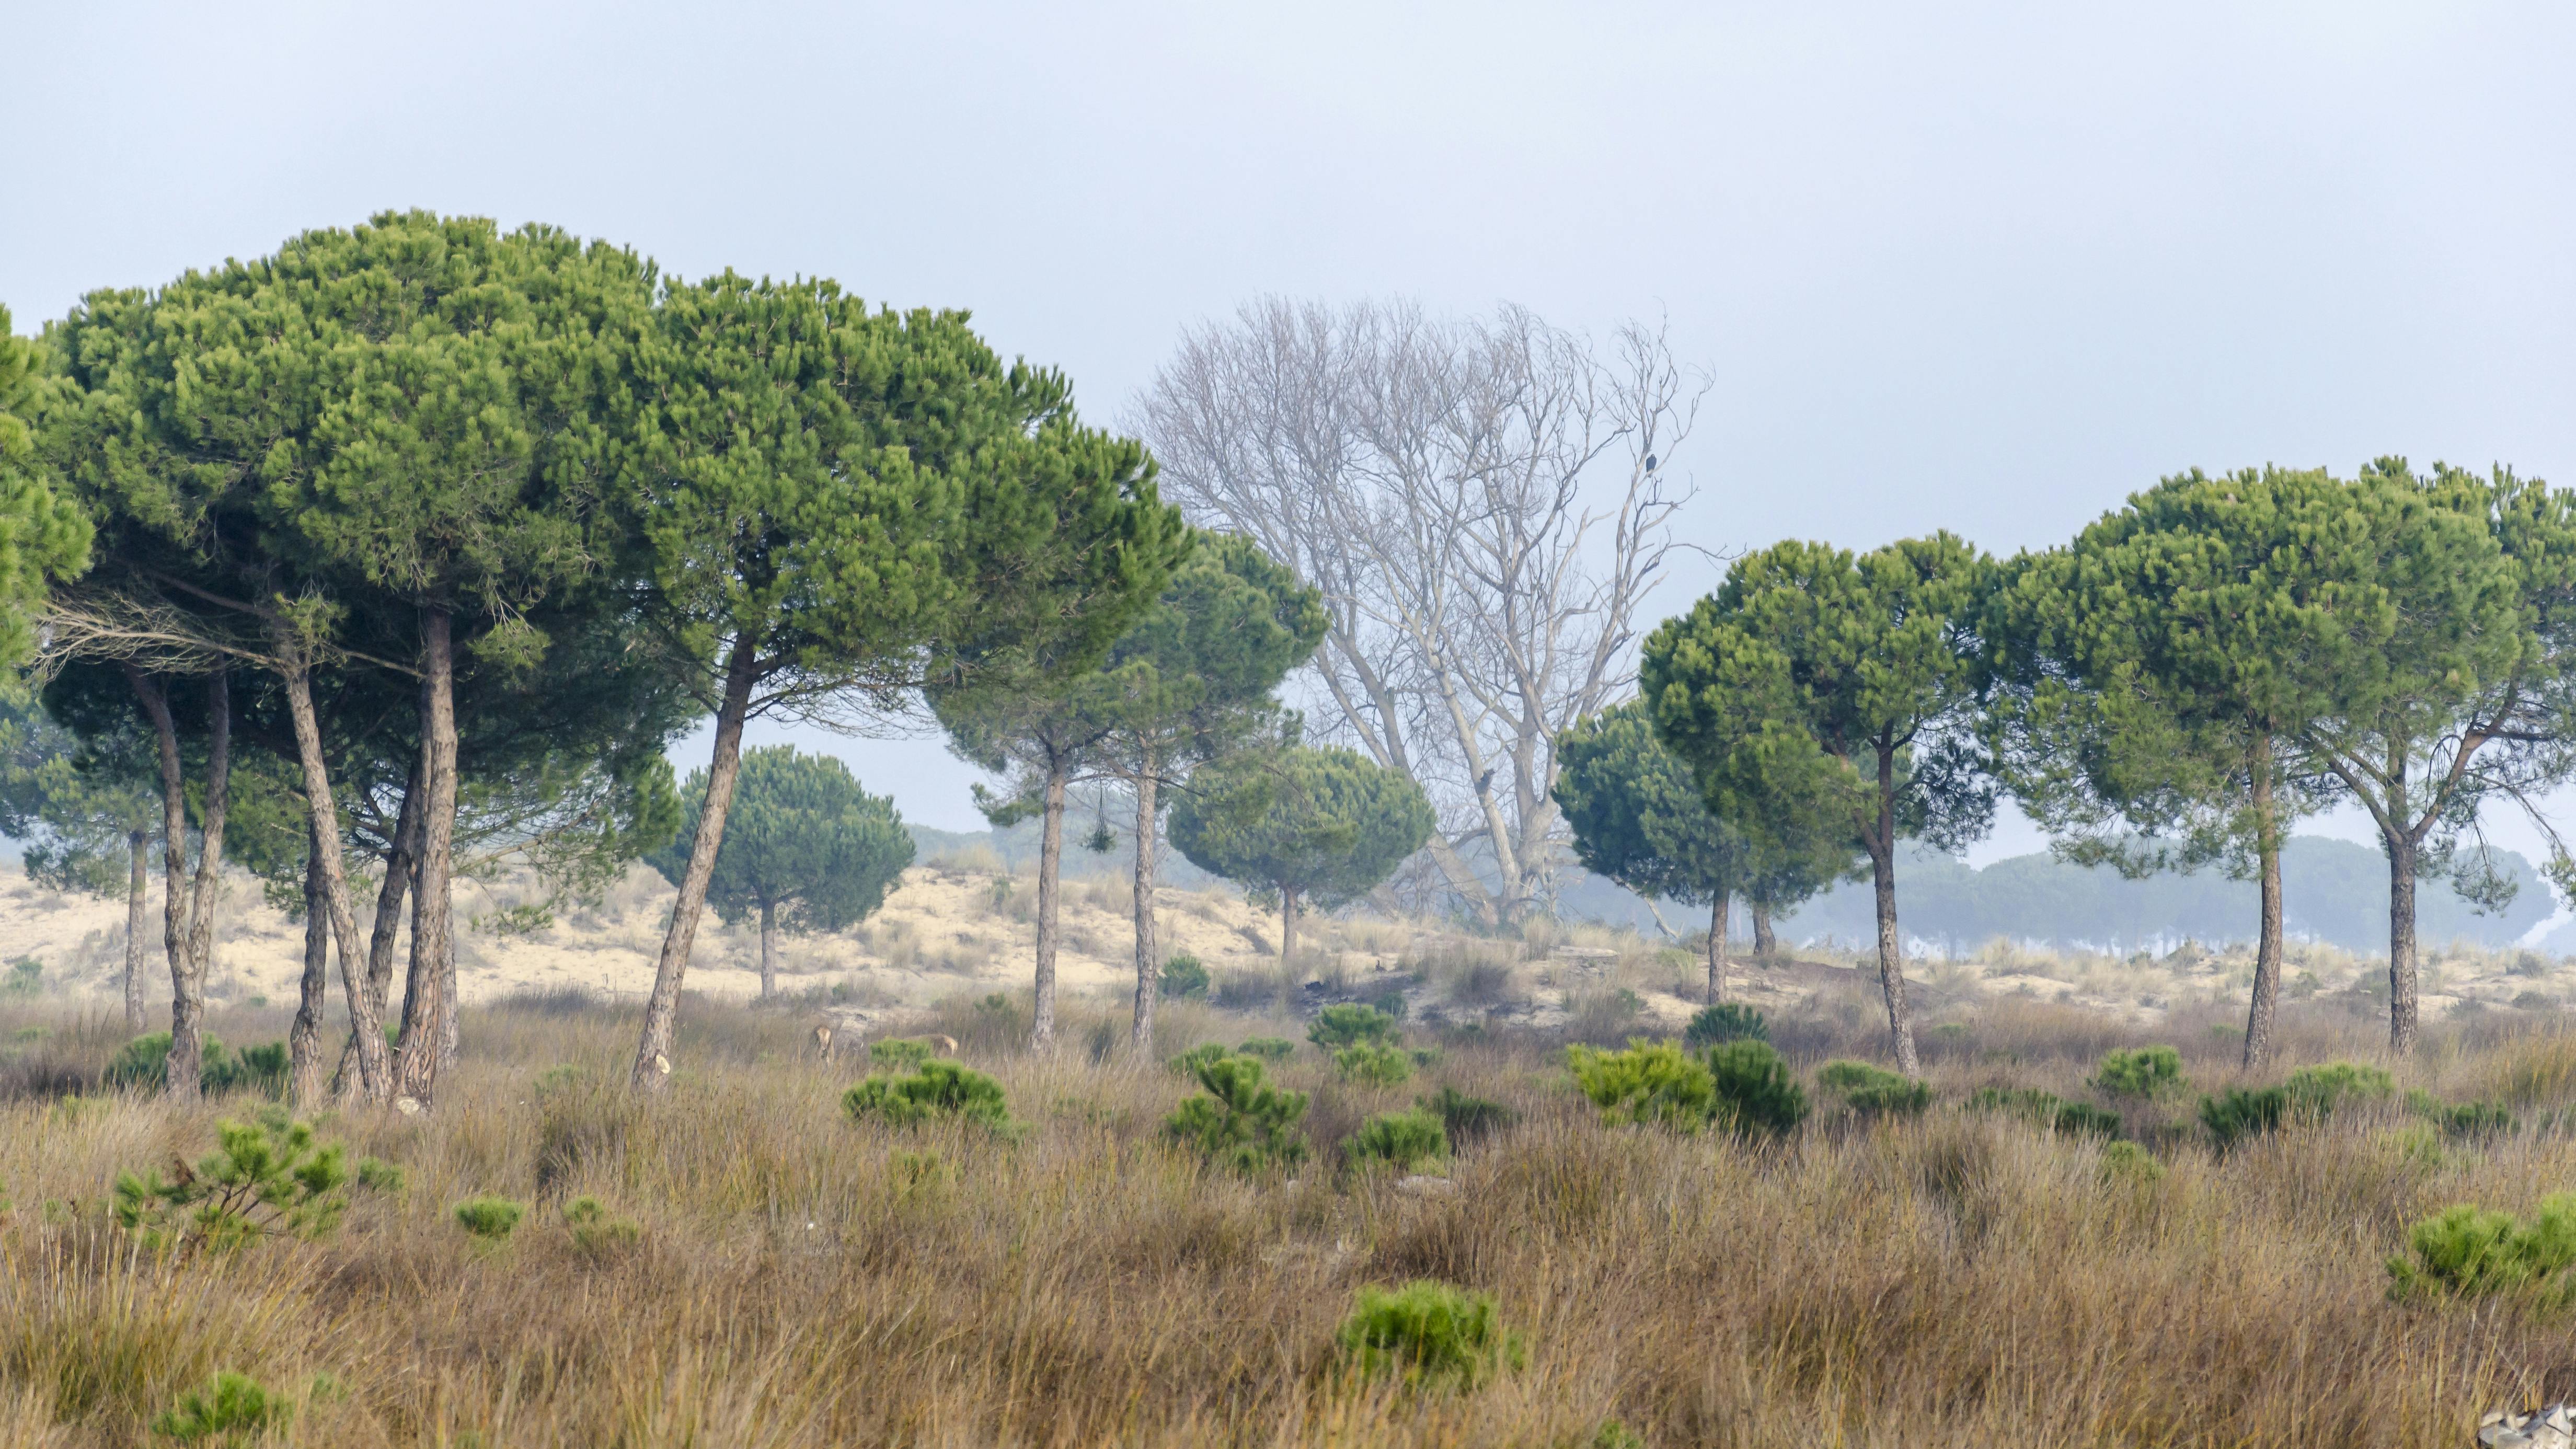 Doñana Nationalpark